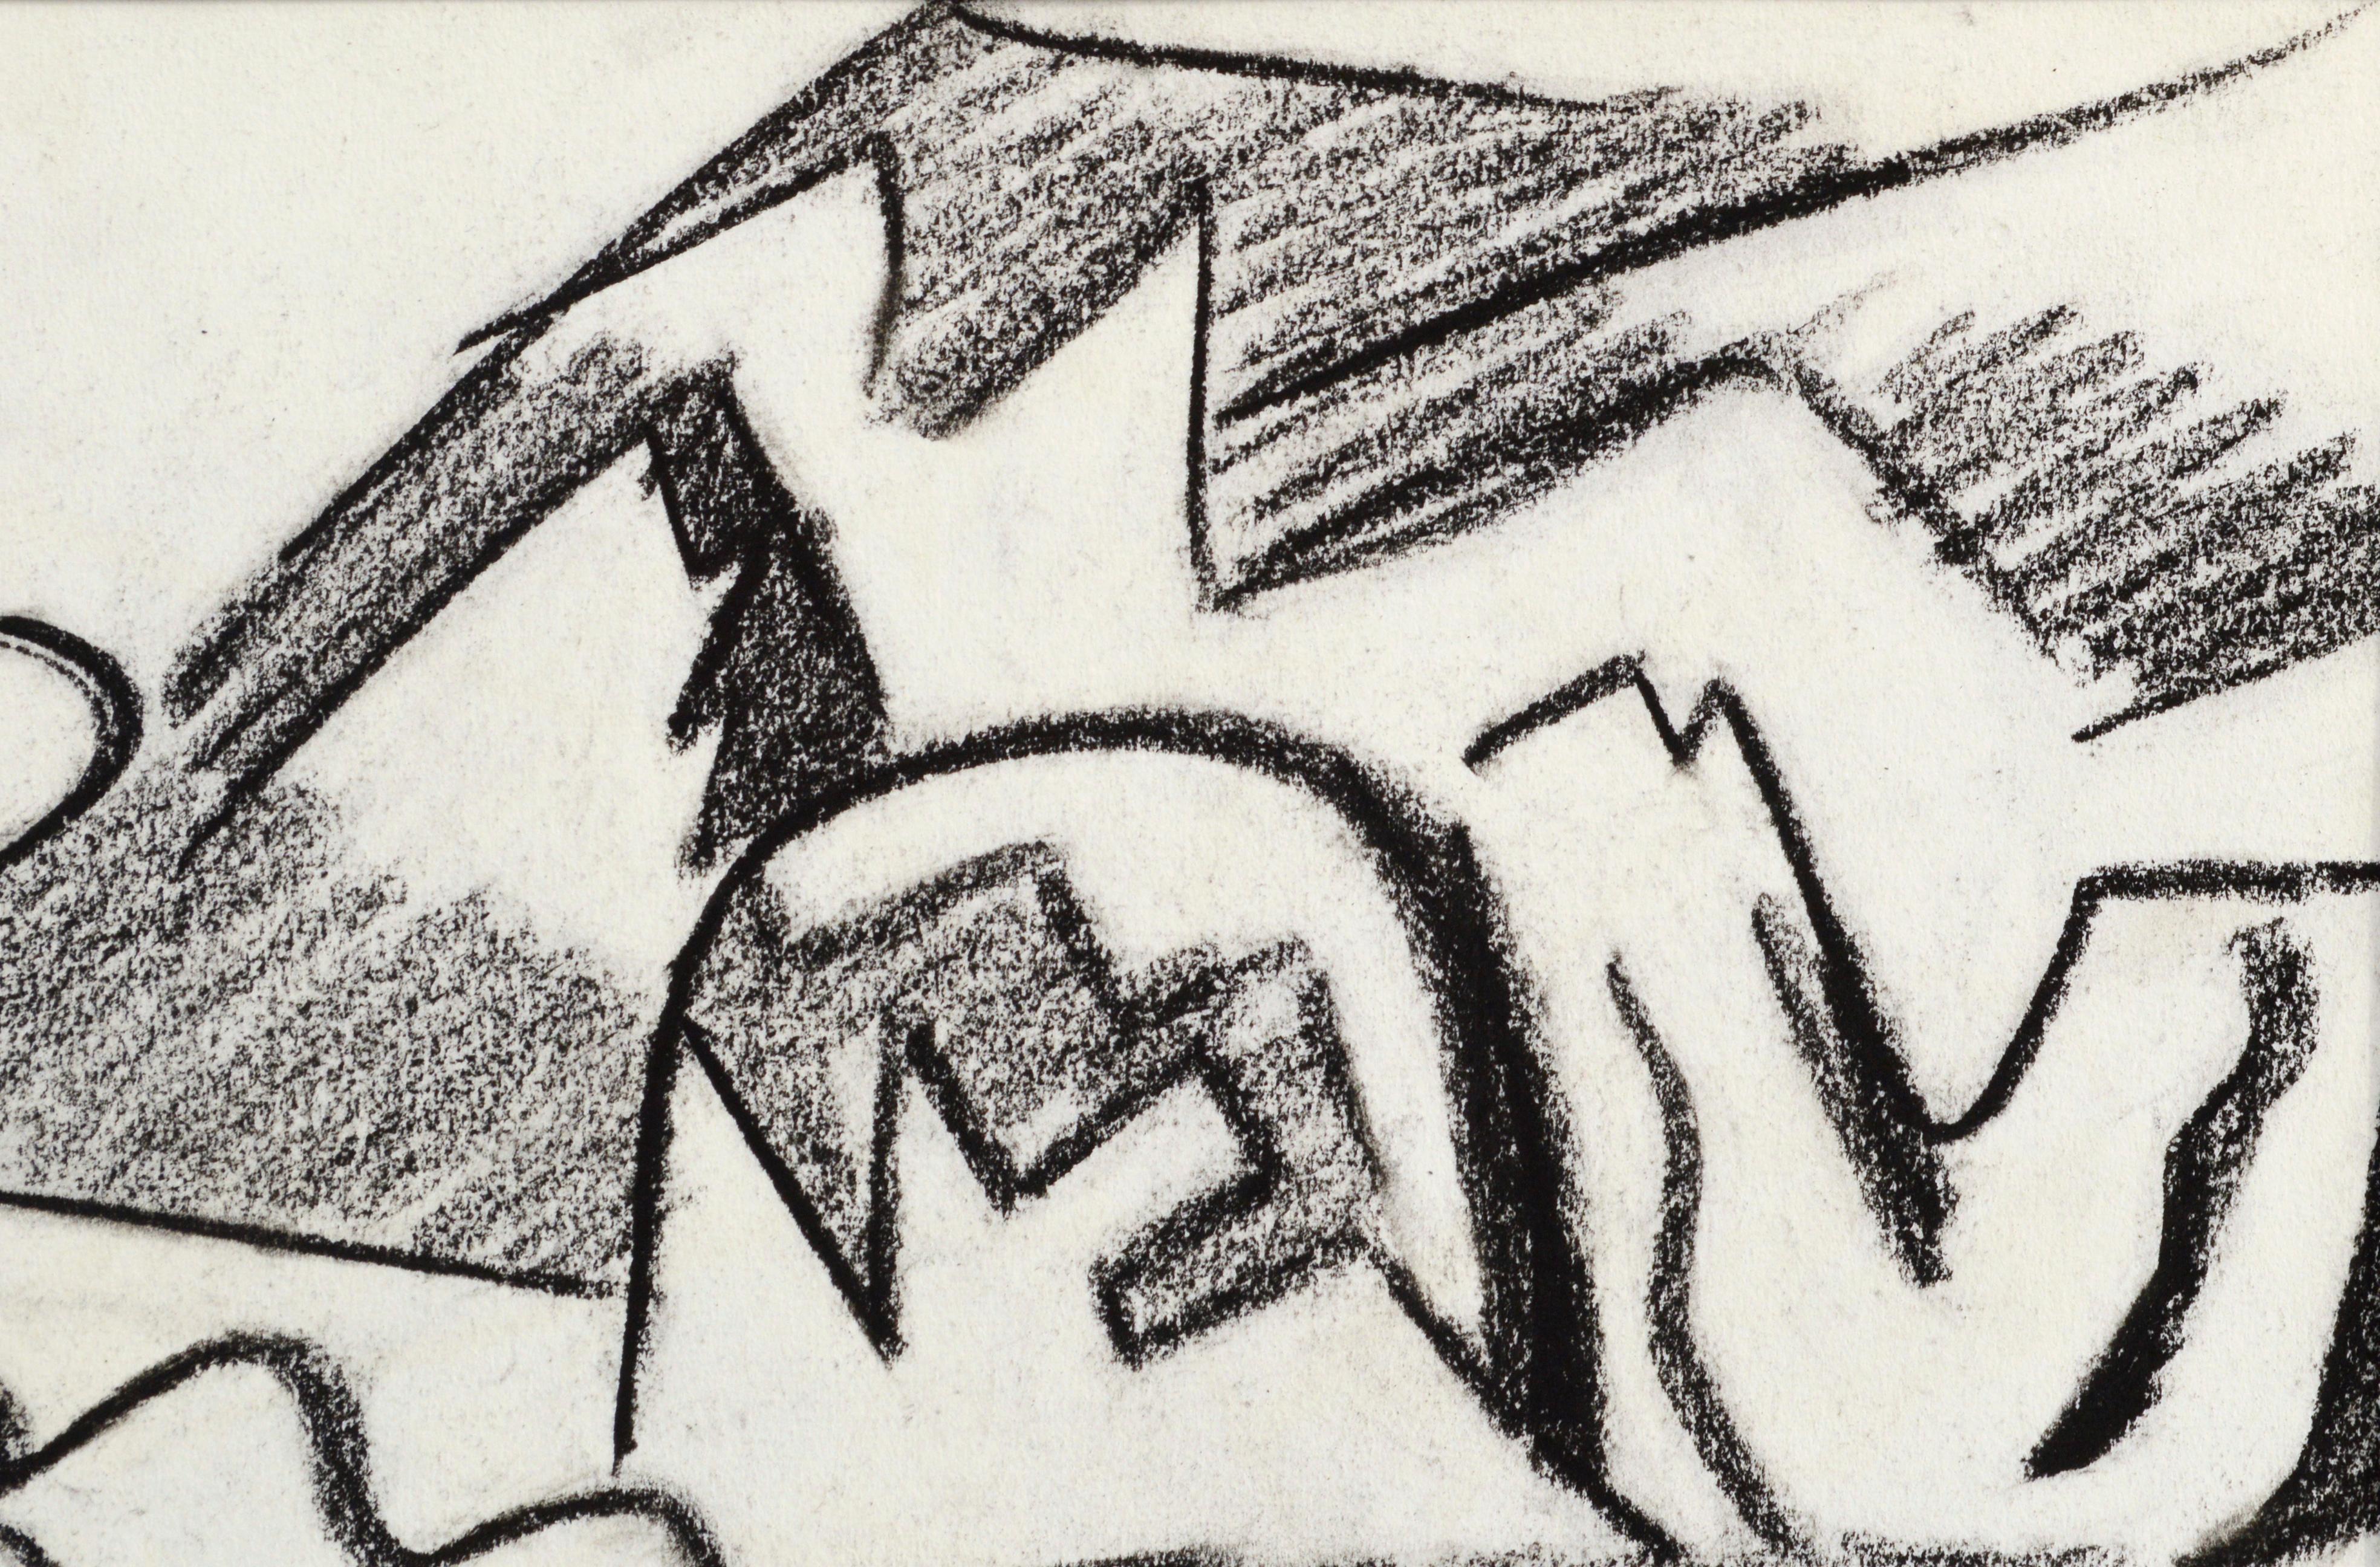 Kräftige abstrakte schwarz-weiße Pastell-Landschaftszeichnung von Erle Loran (Amerikaner, 1905-1999). Unsigniert, wurde aber aus dem Nachlass des Künstlers erworben. Präsentiert in einer neuen schwarzen Matte mit Schaumstoffunterlage. Provenienz: